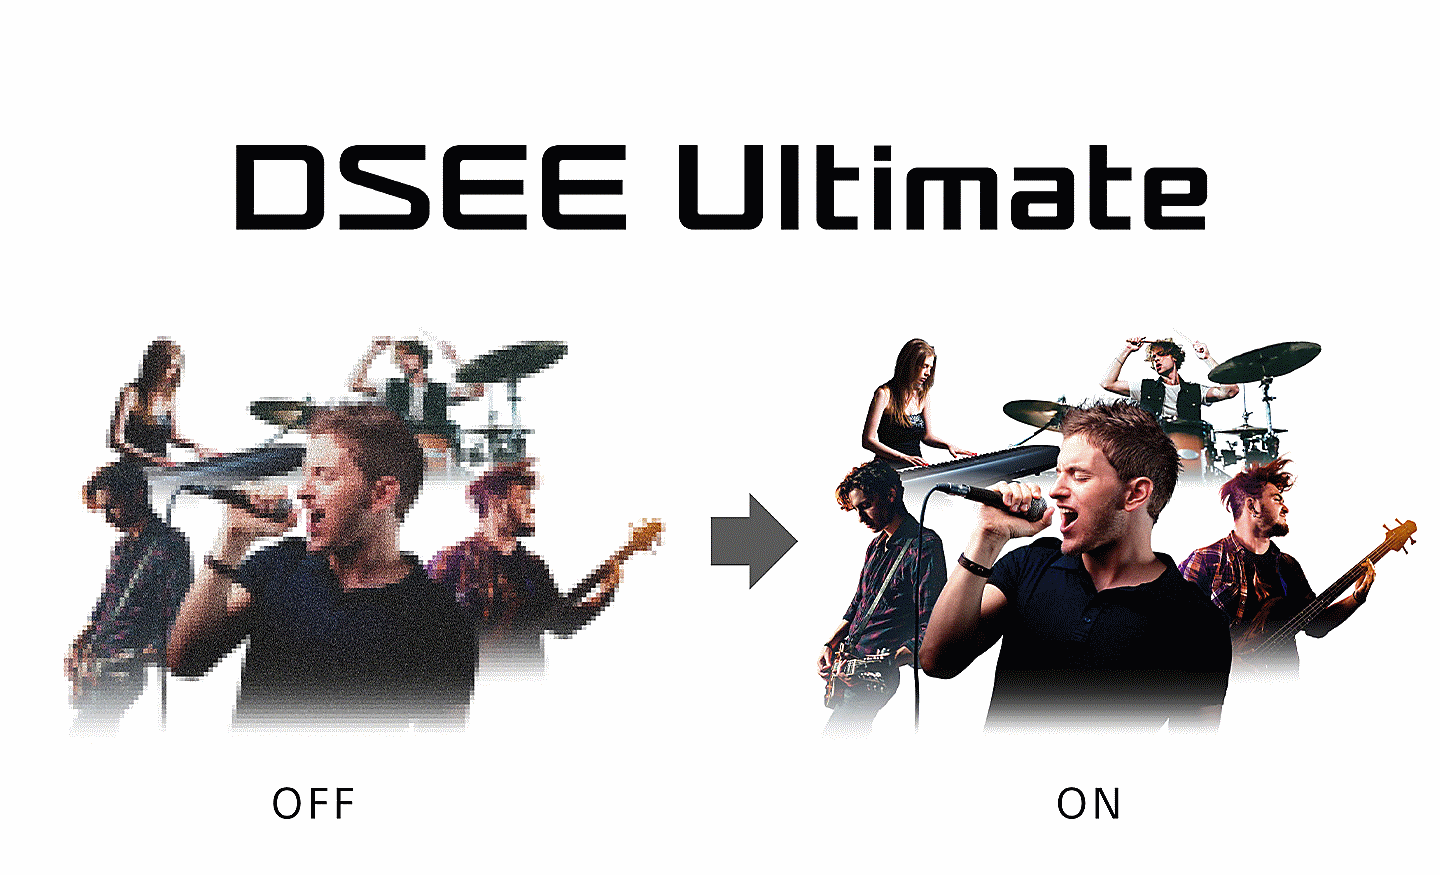 Deux images identiques de personnes jouant d'instruments de musique sous le texte DSEE Ultimate, celle de gauche étant floue et celle de droite, nette